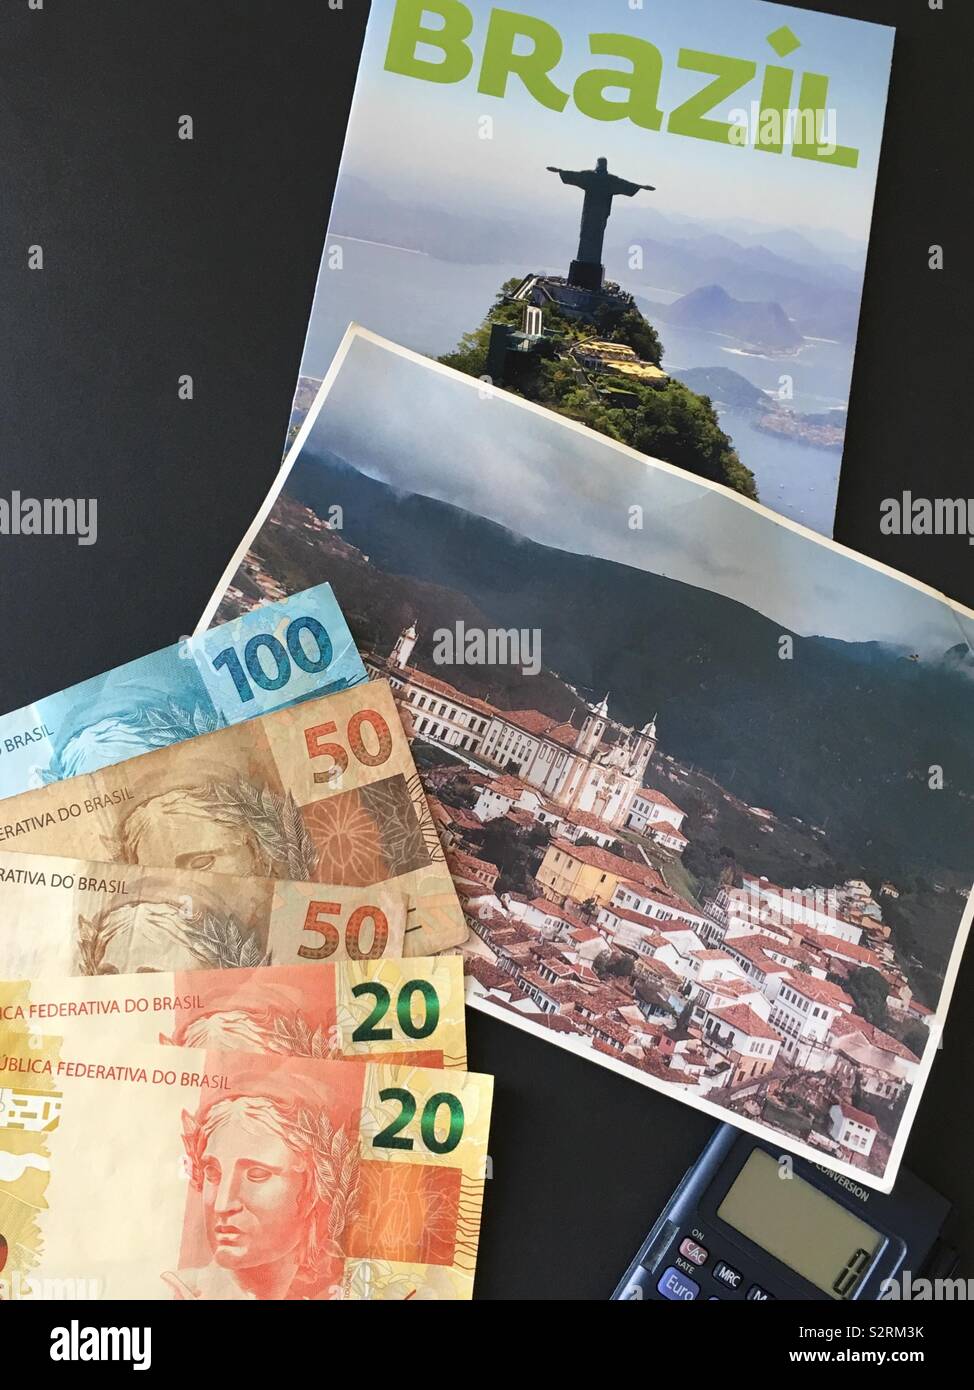 Die Vorbereitung für eine Reise nach Brasilien, brasilianische Real (Währung), einen Rechner, eine Postkarte von Ouro Preto in Minas Gerais, und einige touristische Informationen über Brasilien. Stockfoto